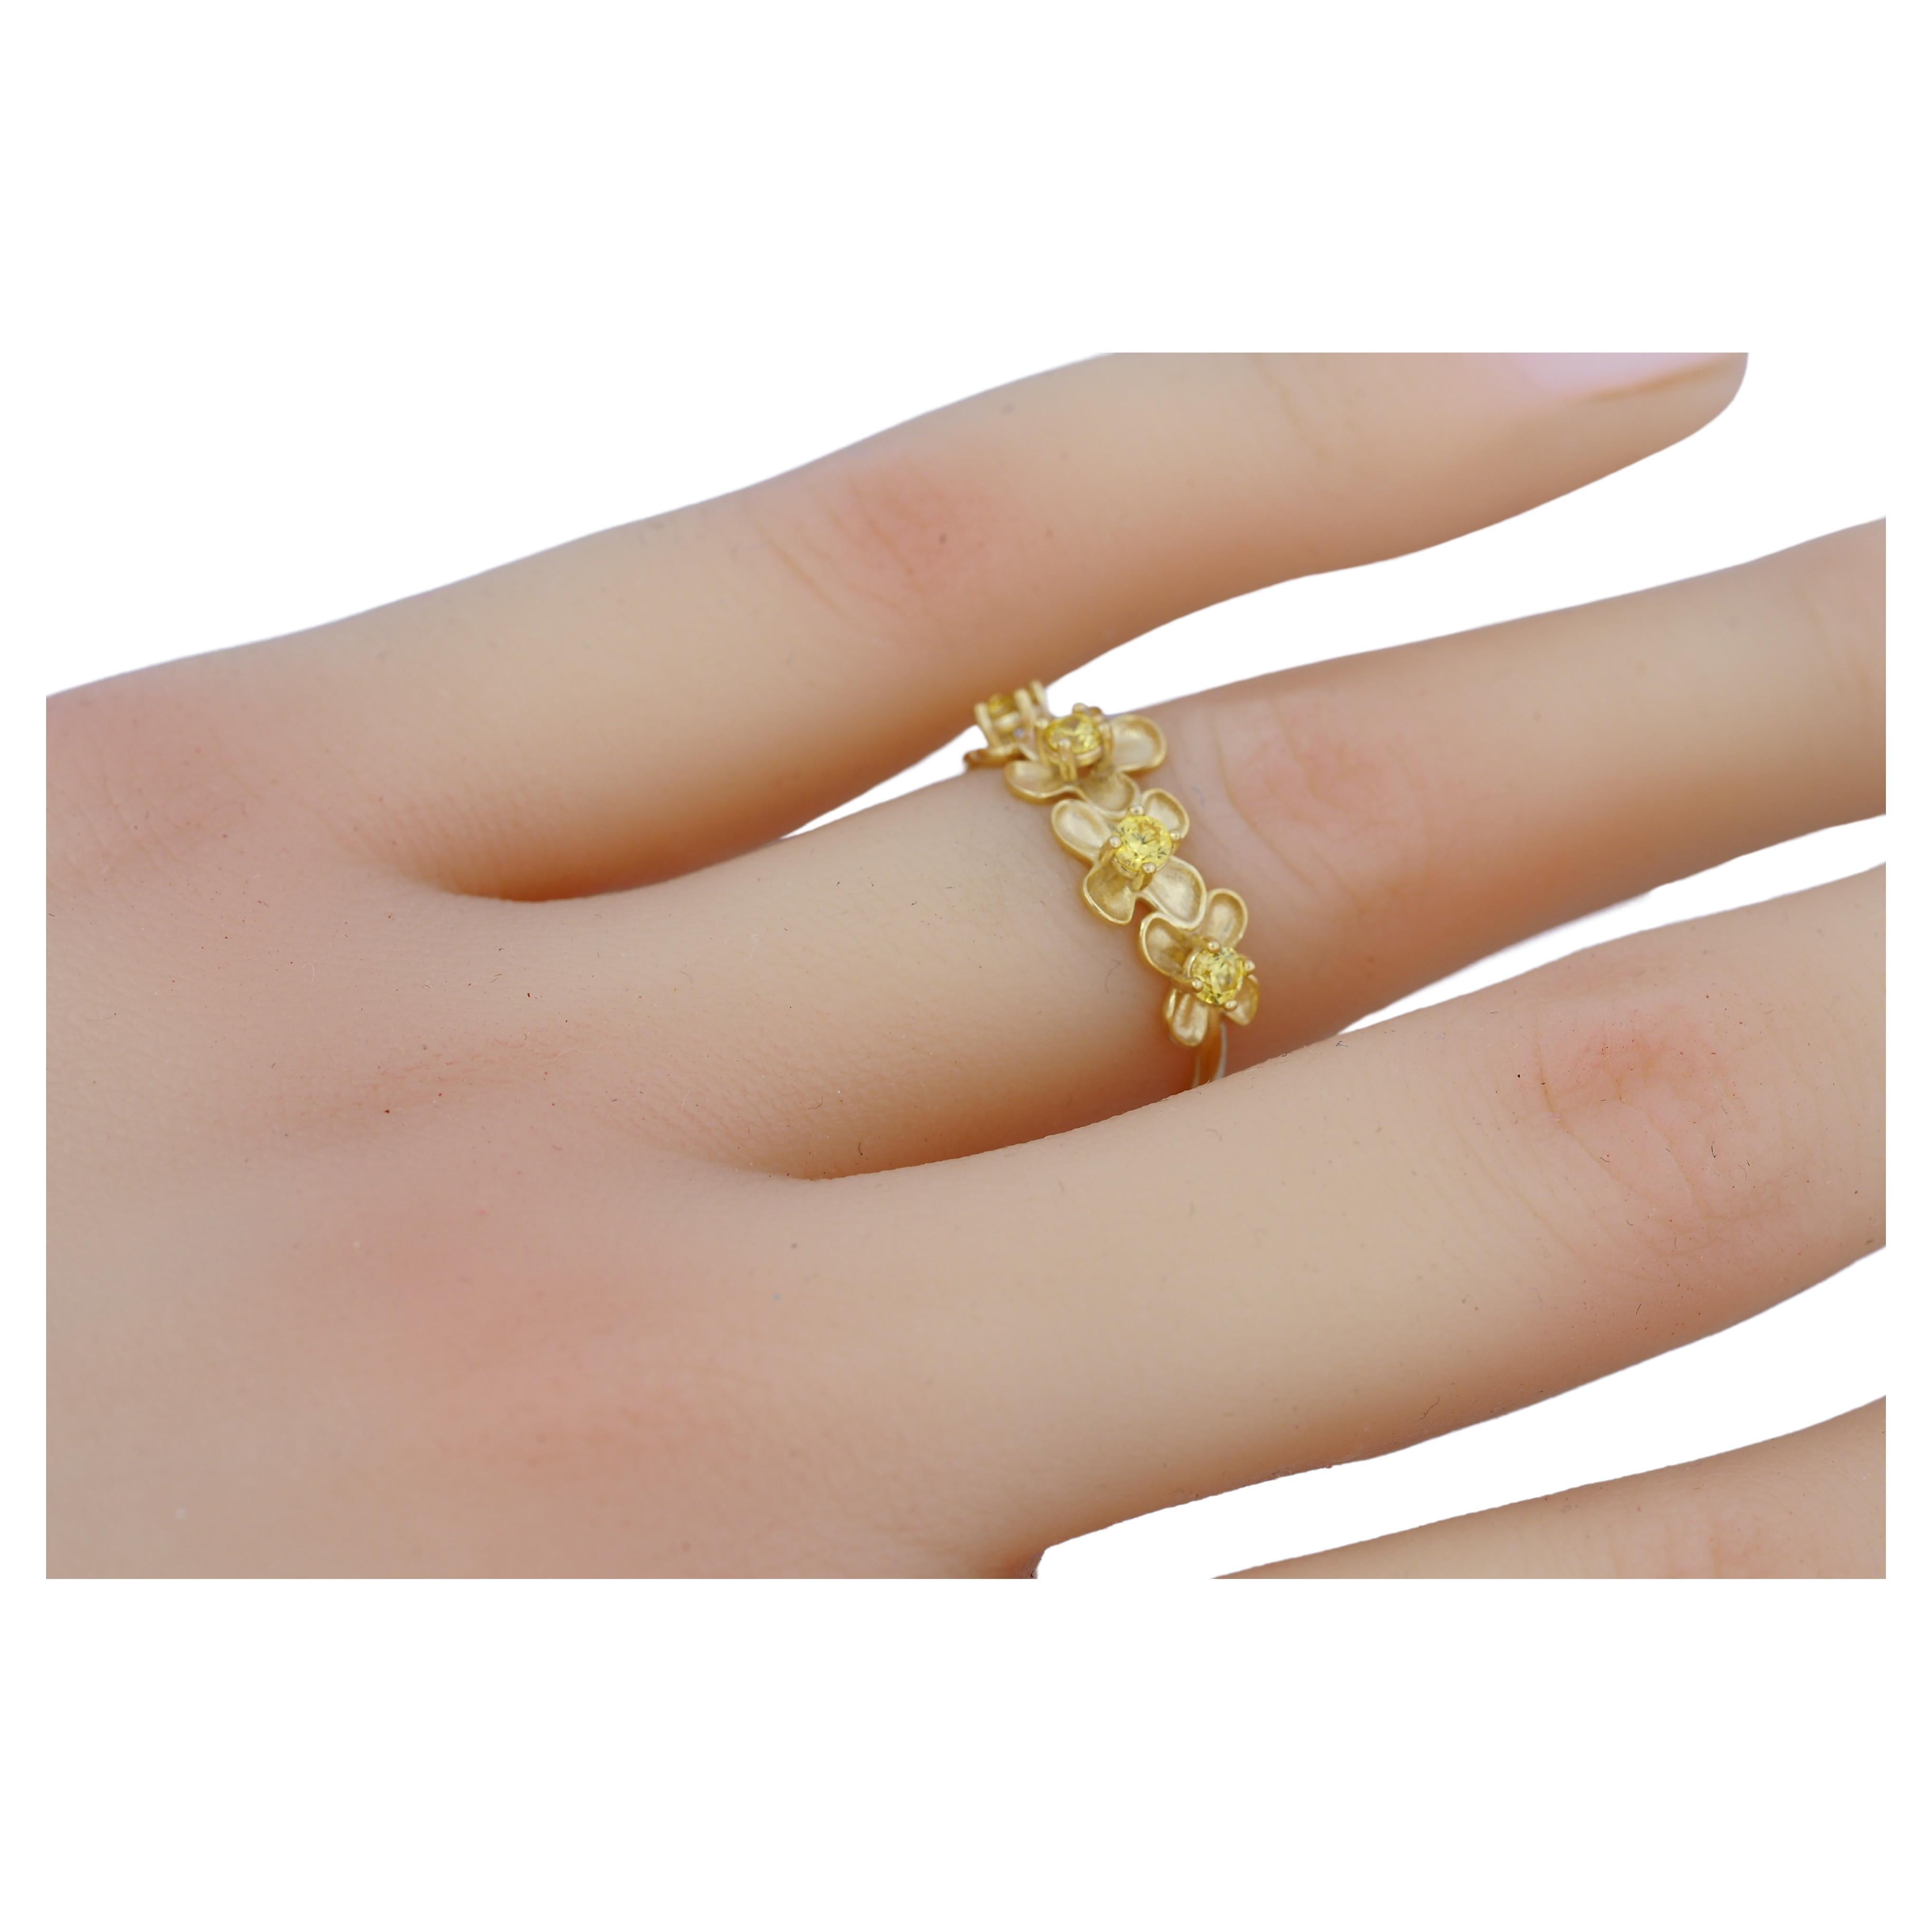 Flower 14k gold ring. For Sale